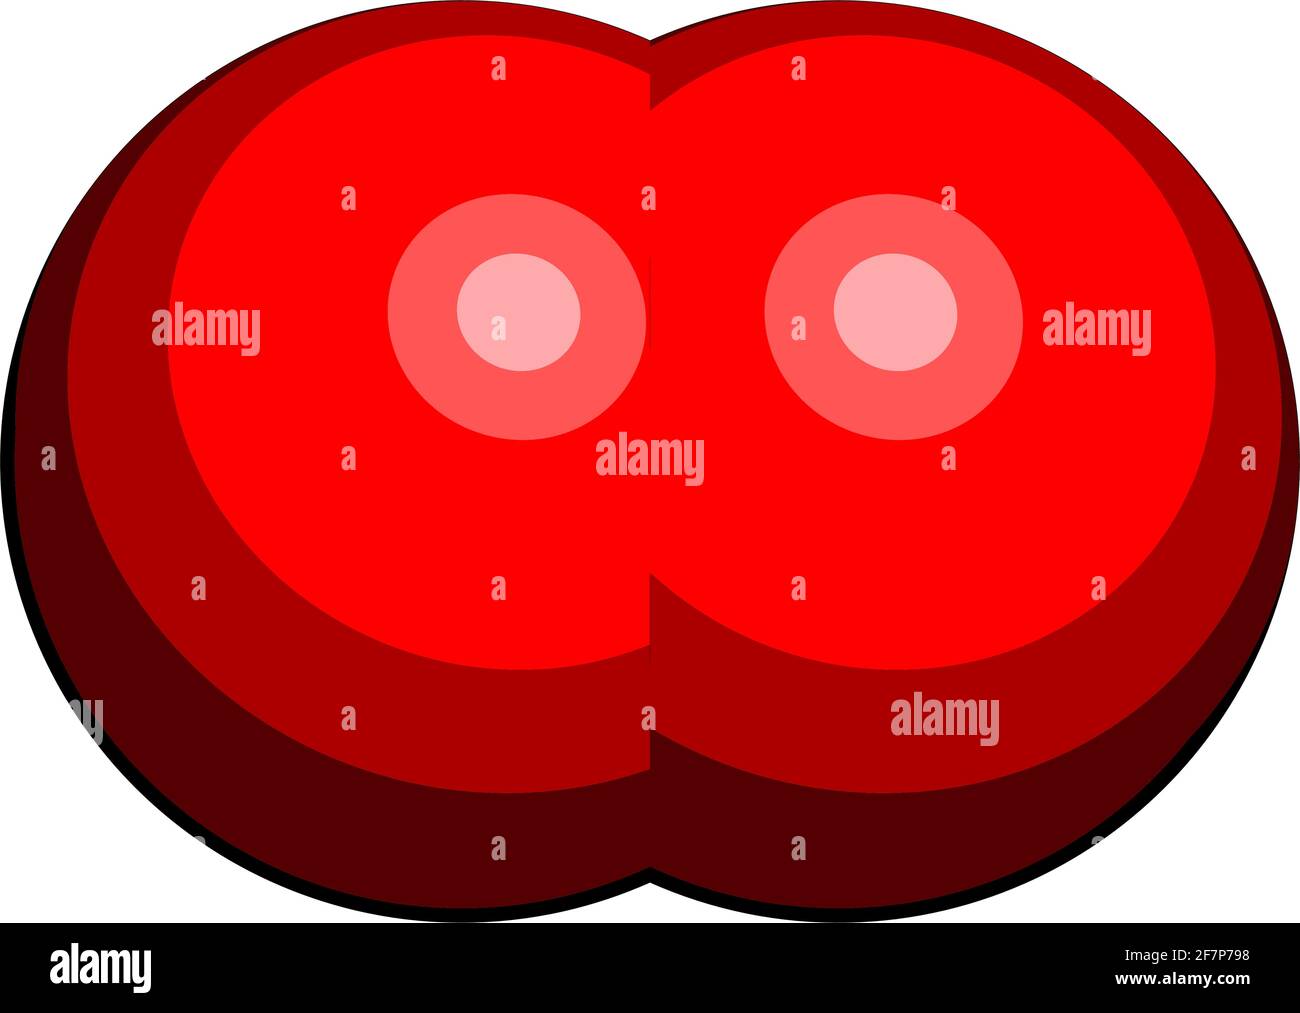 Elementares Sauerstoffmolekül (O2). 3D-Rendering. Atome werden als Kugeln mit herkömmlicher Farbkodierung dargestellt: Sauerstoff (rot). Stock Vektor